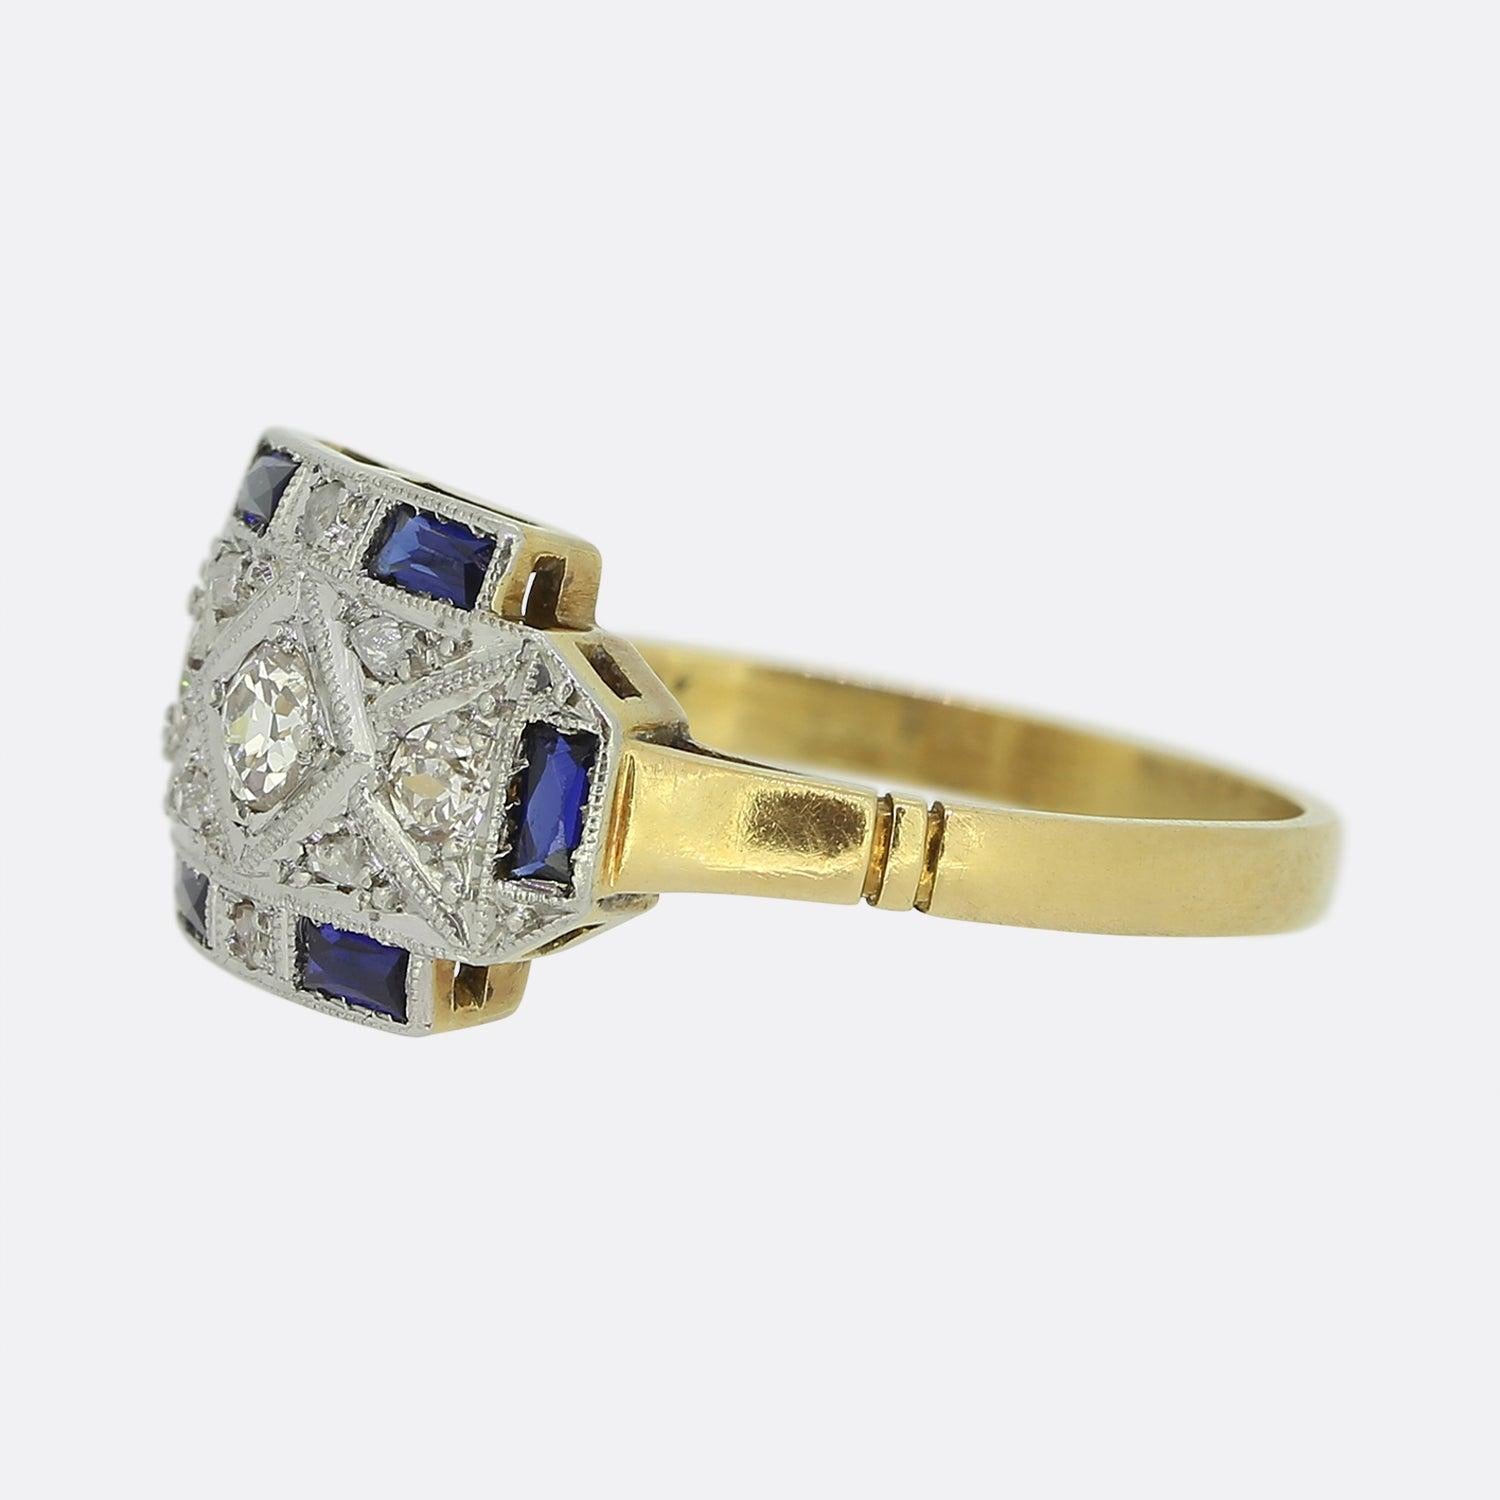 Hier haben wir einen originalen Art-Deco-Ring mit Saphir und Diamant. Dieses Stück ist in der Mitte mit Diamanten im Alt- und Rosenschliff besetzt und mit blauen Saphiren im Rechteckschliff eingefasst. Das Band ist aus 18 Karat Gelbgold mit einer